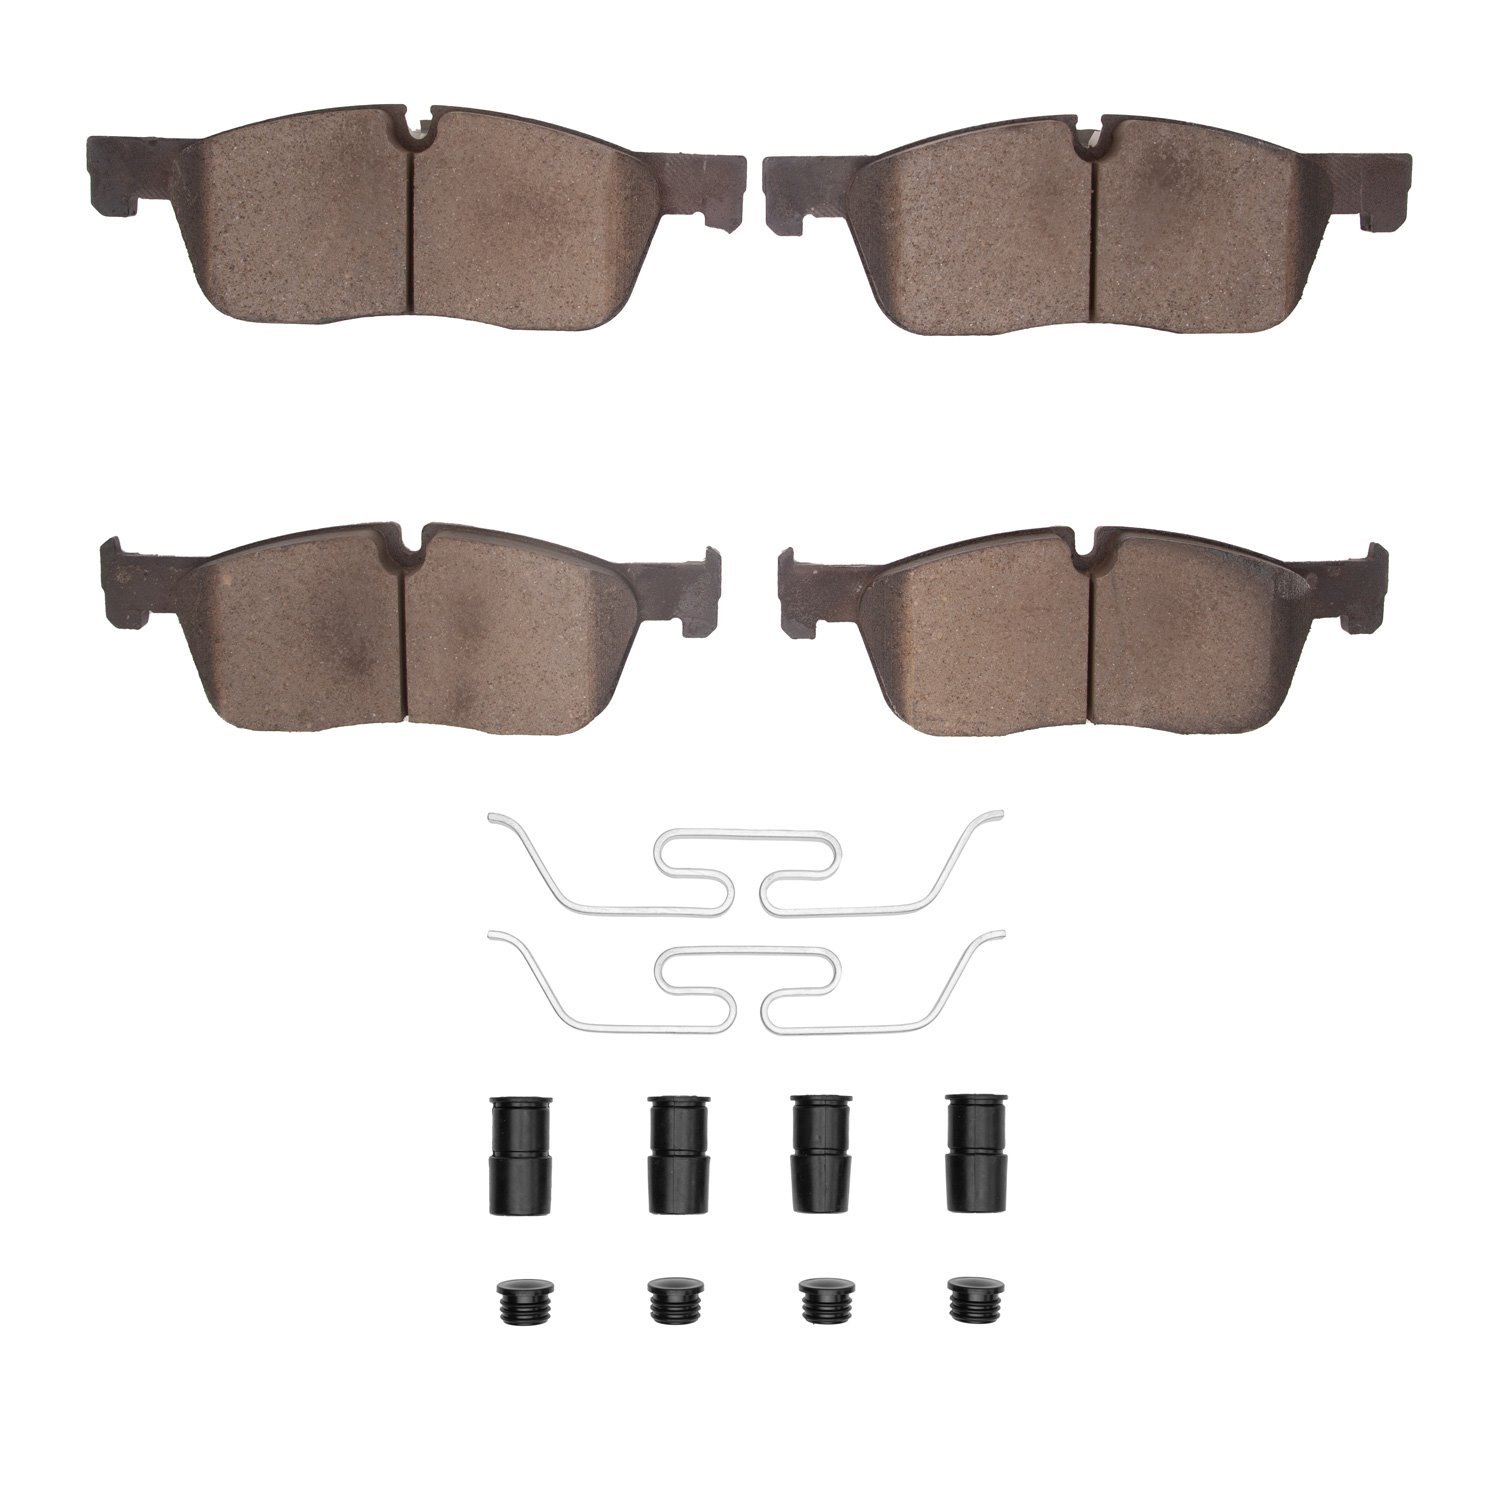 Ceramic Brake Pads & Hardware Kit, 2015-2019 Fits Multiple Makes/Models, Position: Front